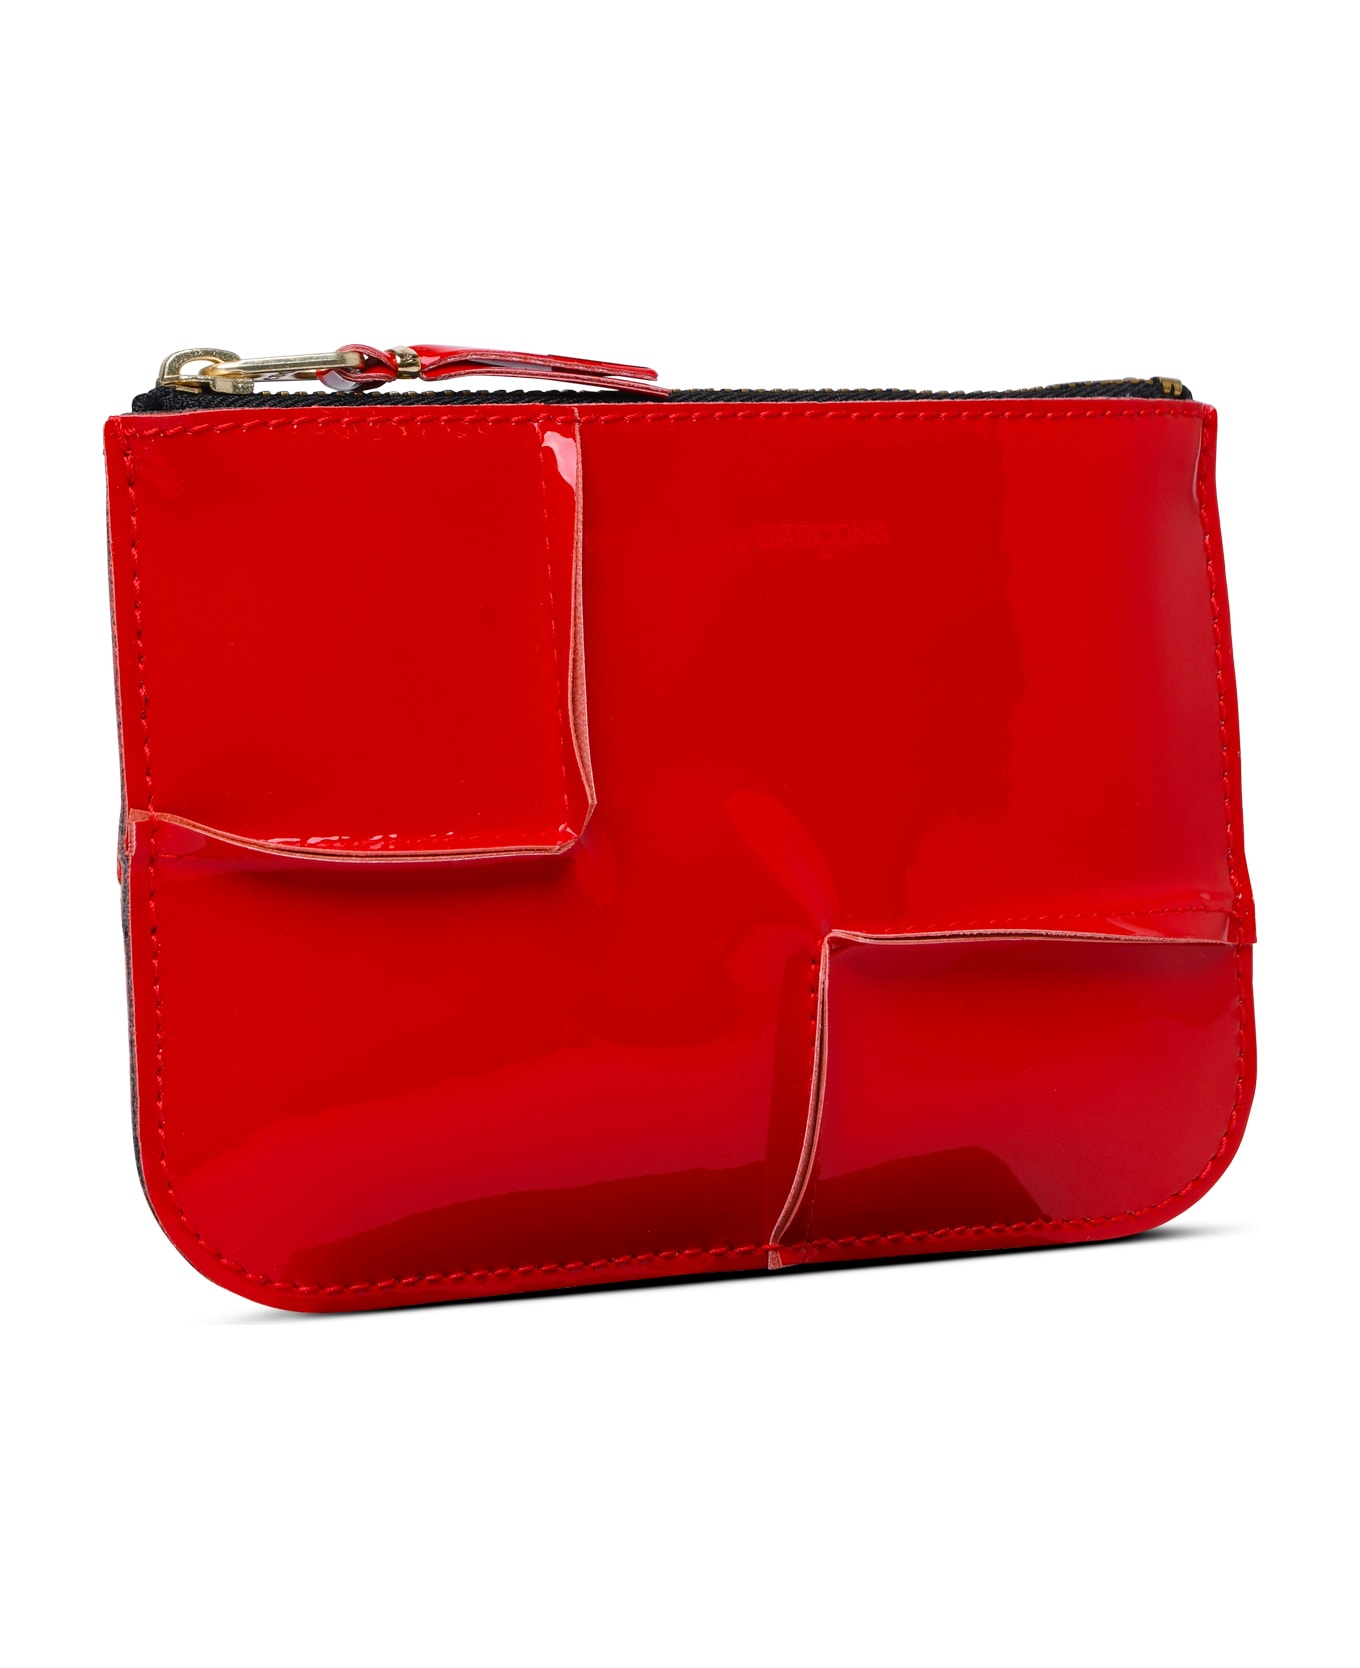 Comme des Garçons Wallet 'medley' Red Leather Card Holder - Red 財布